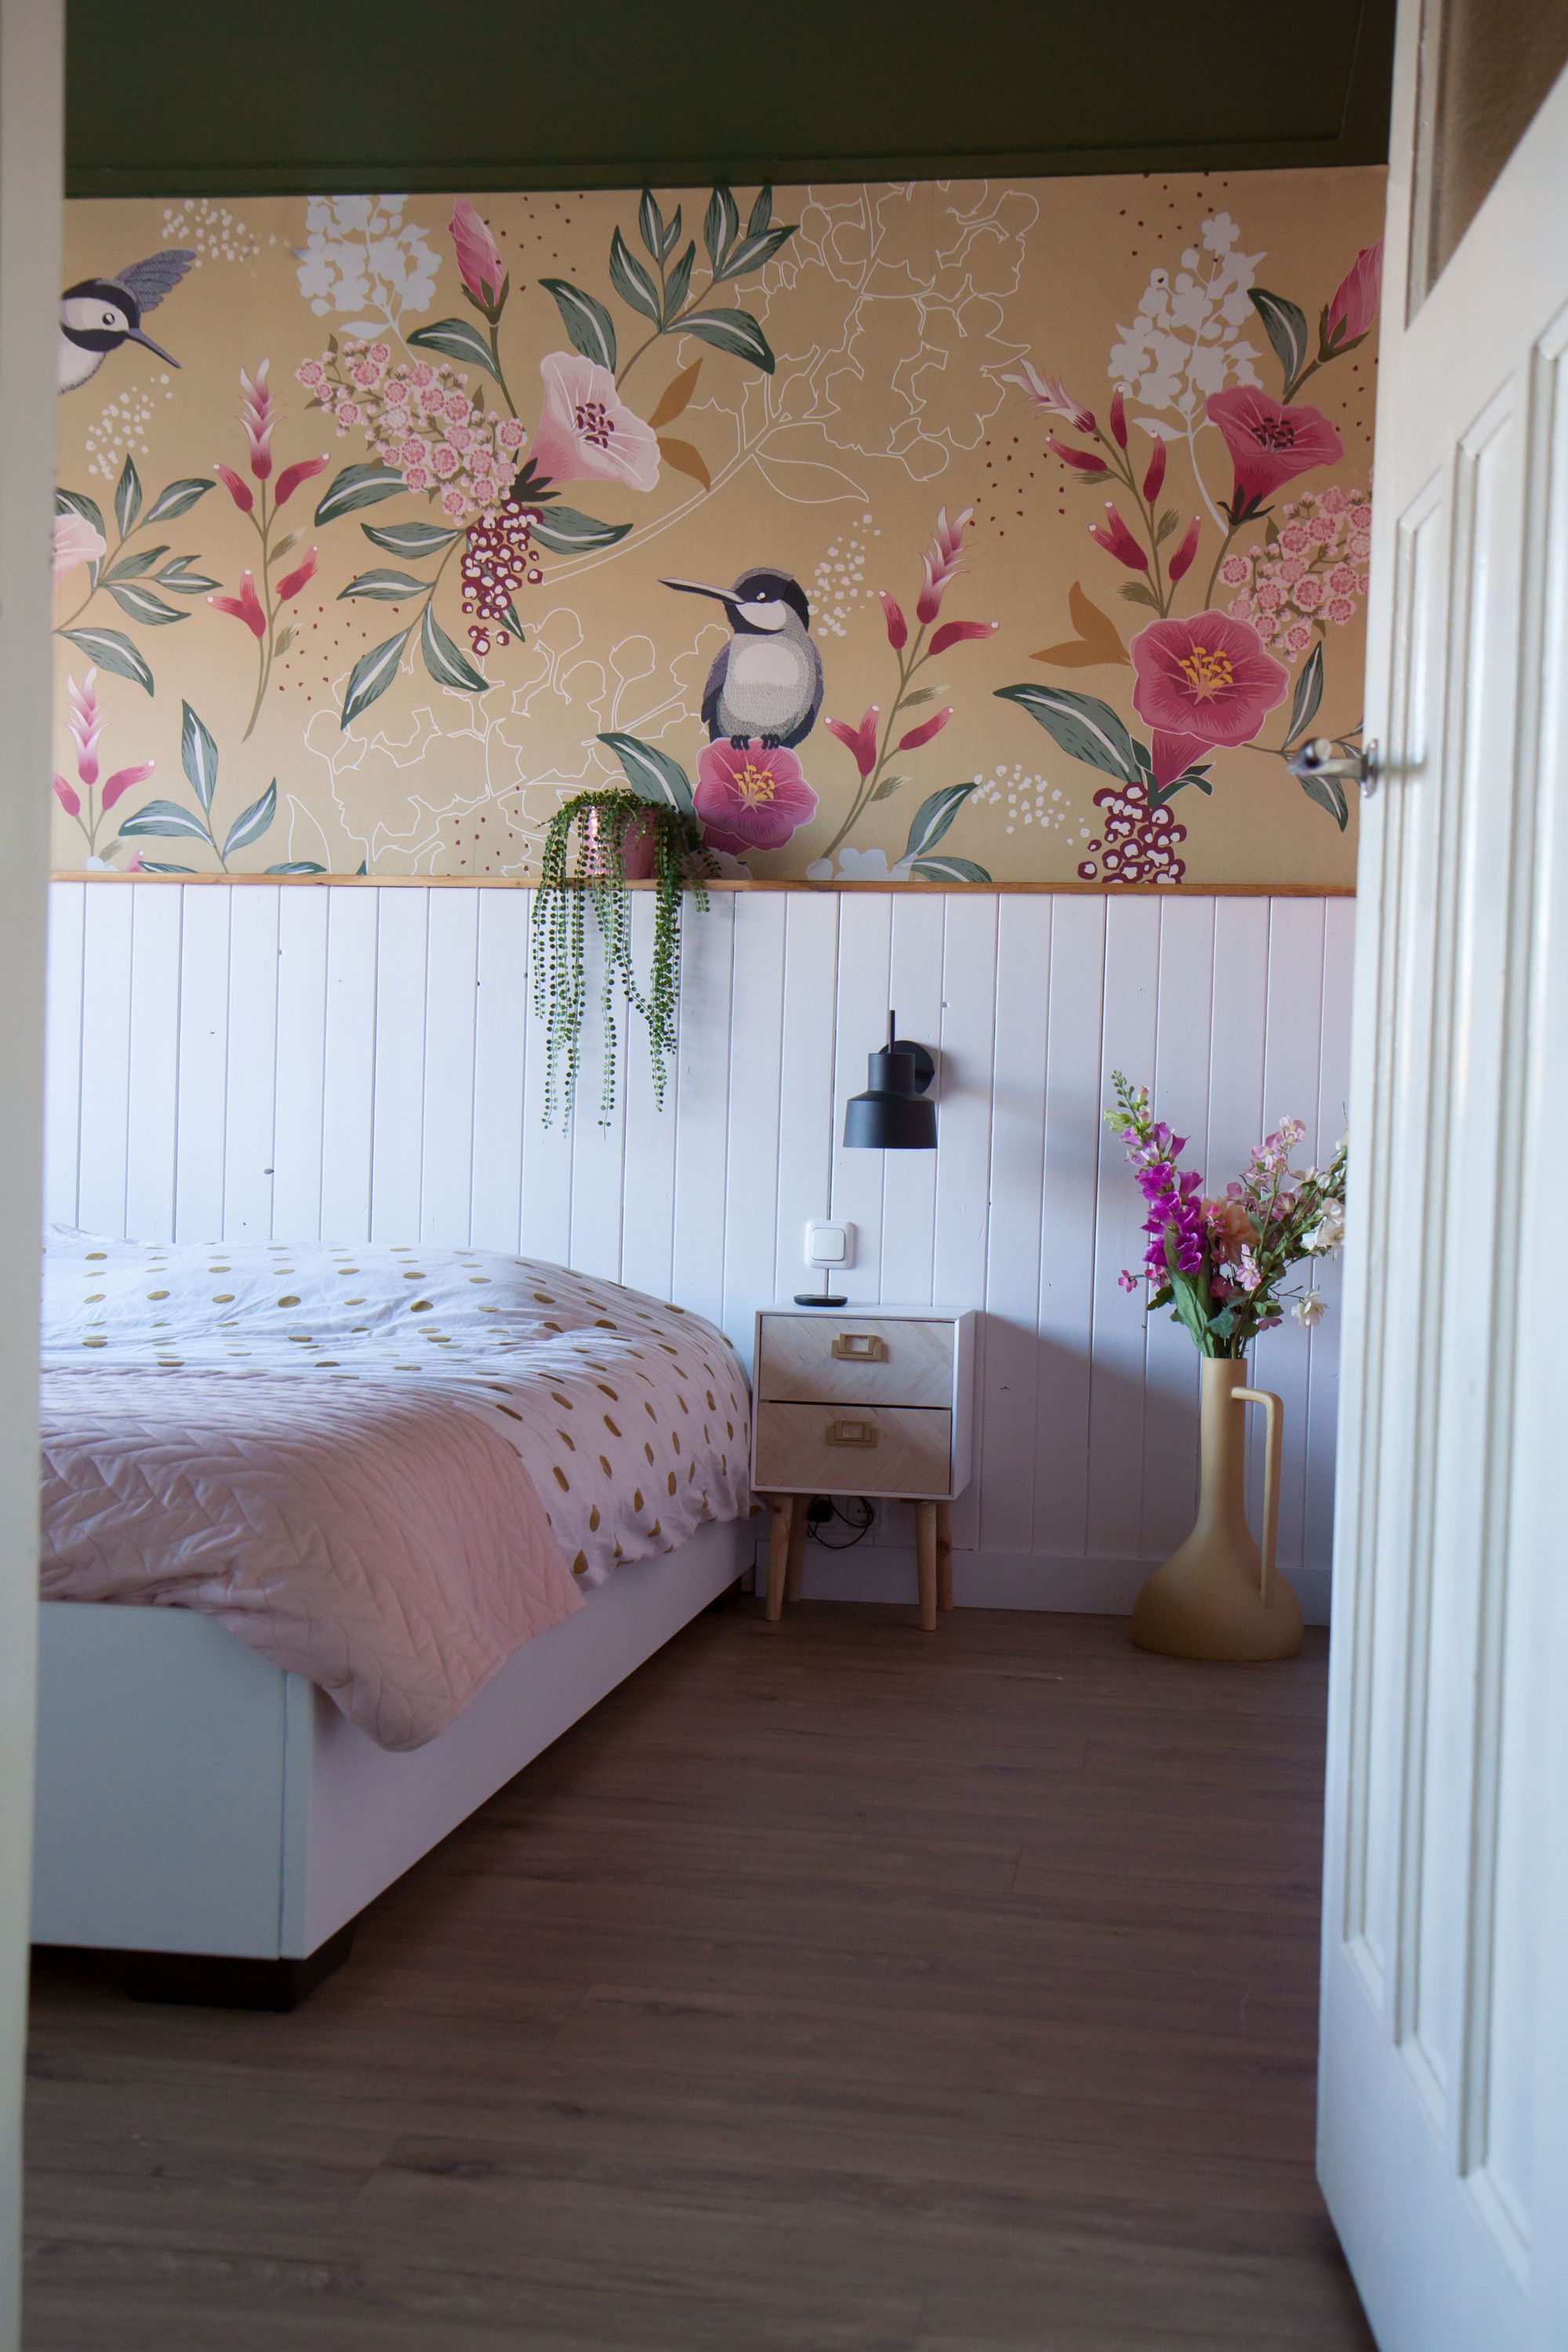 Het beste Optimisme Junior Zelf behang ontwerpen voor in de slaapkamer, zo doe je dat!